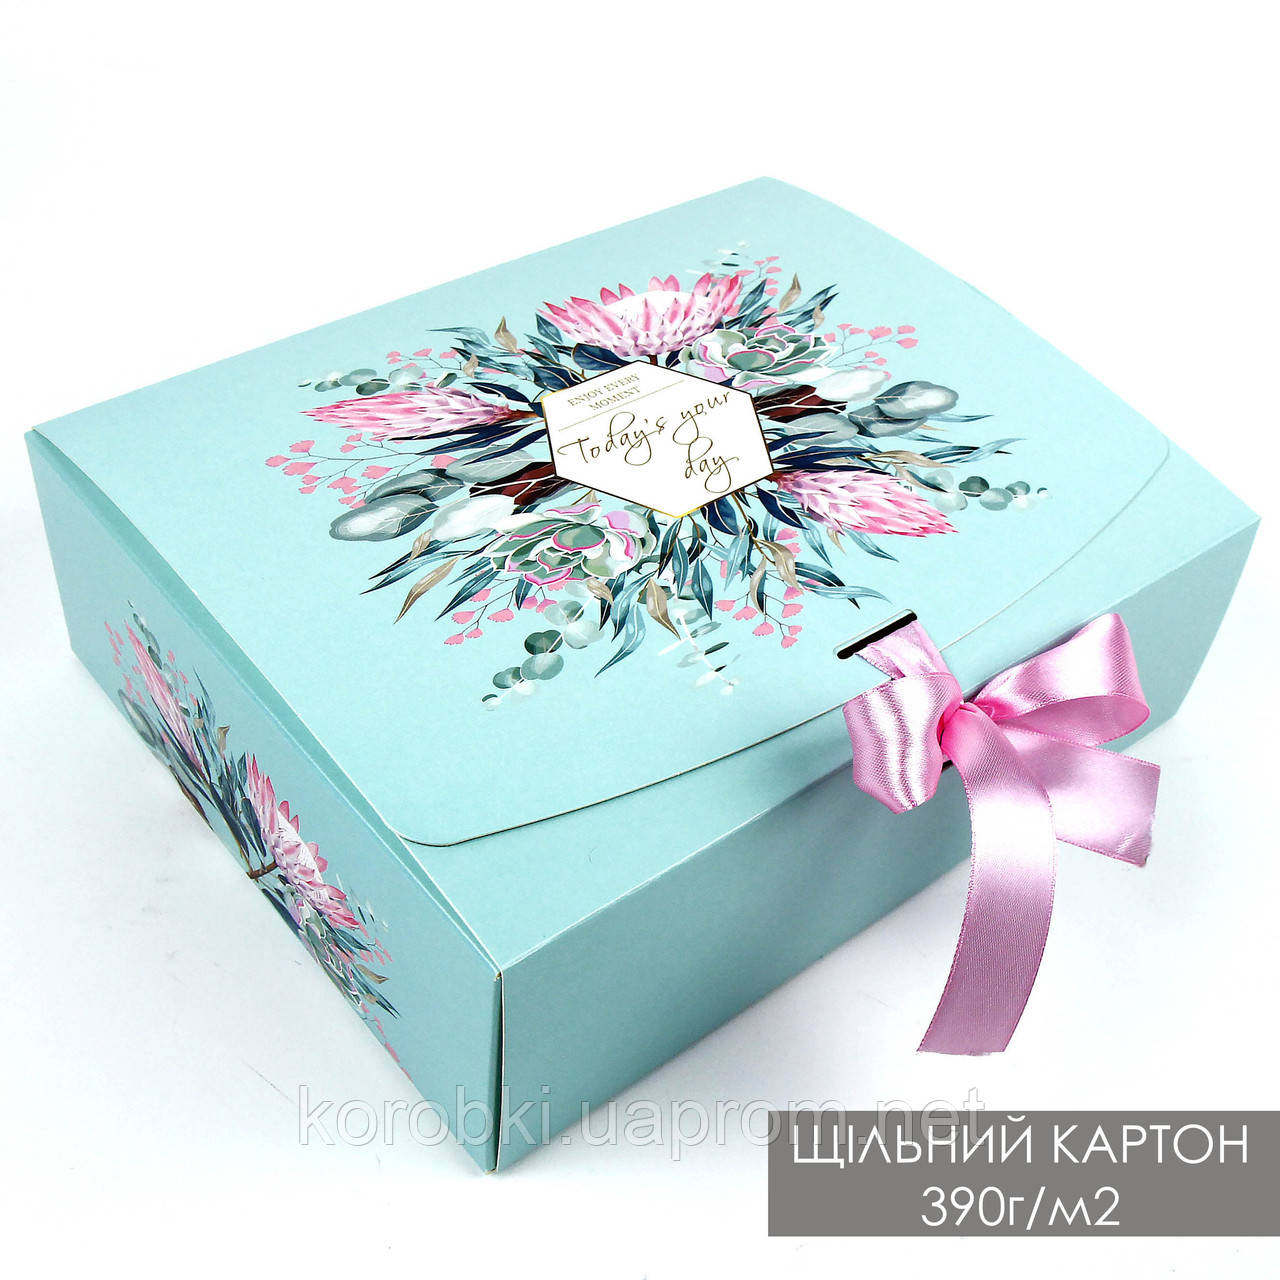 Подарункова складна коробка  26*21*8 cм  (щільний картон 390г/м2) Україна